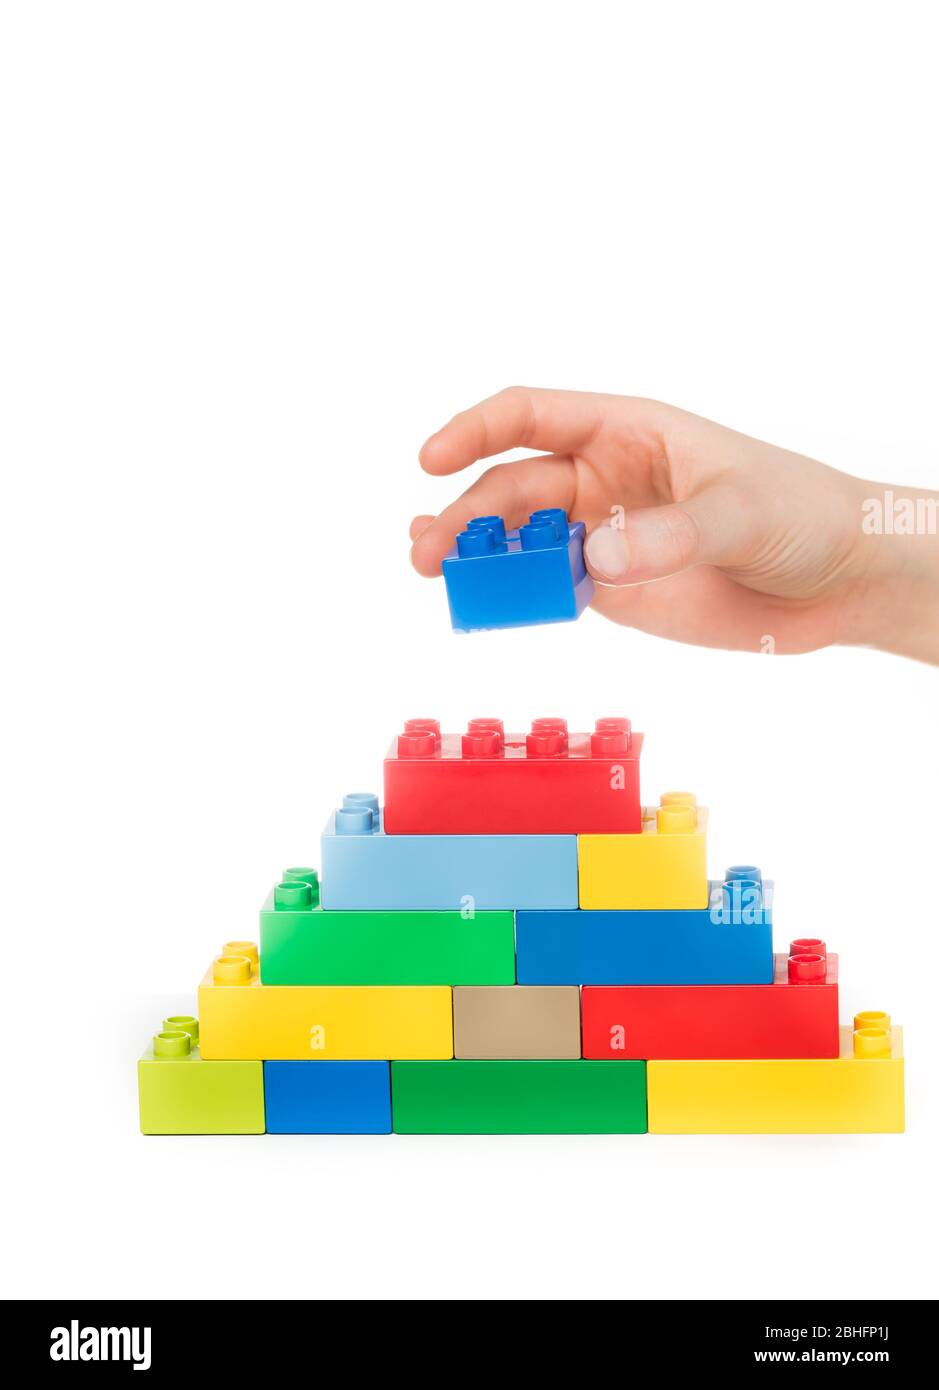 Primo piano di blocchi da costruzione per giocattoli impilabili a mano di un bambino, isolati su uno sfondo bianco Foto Stock